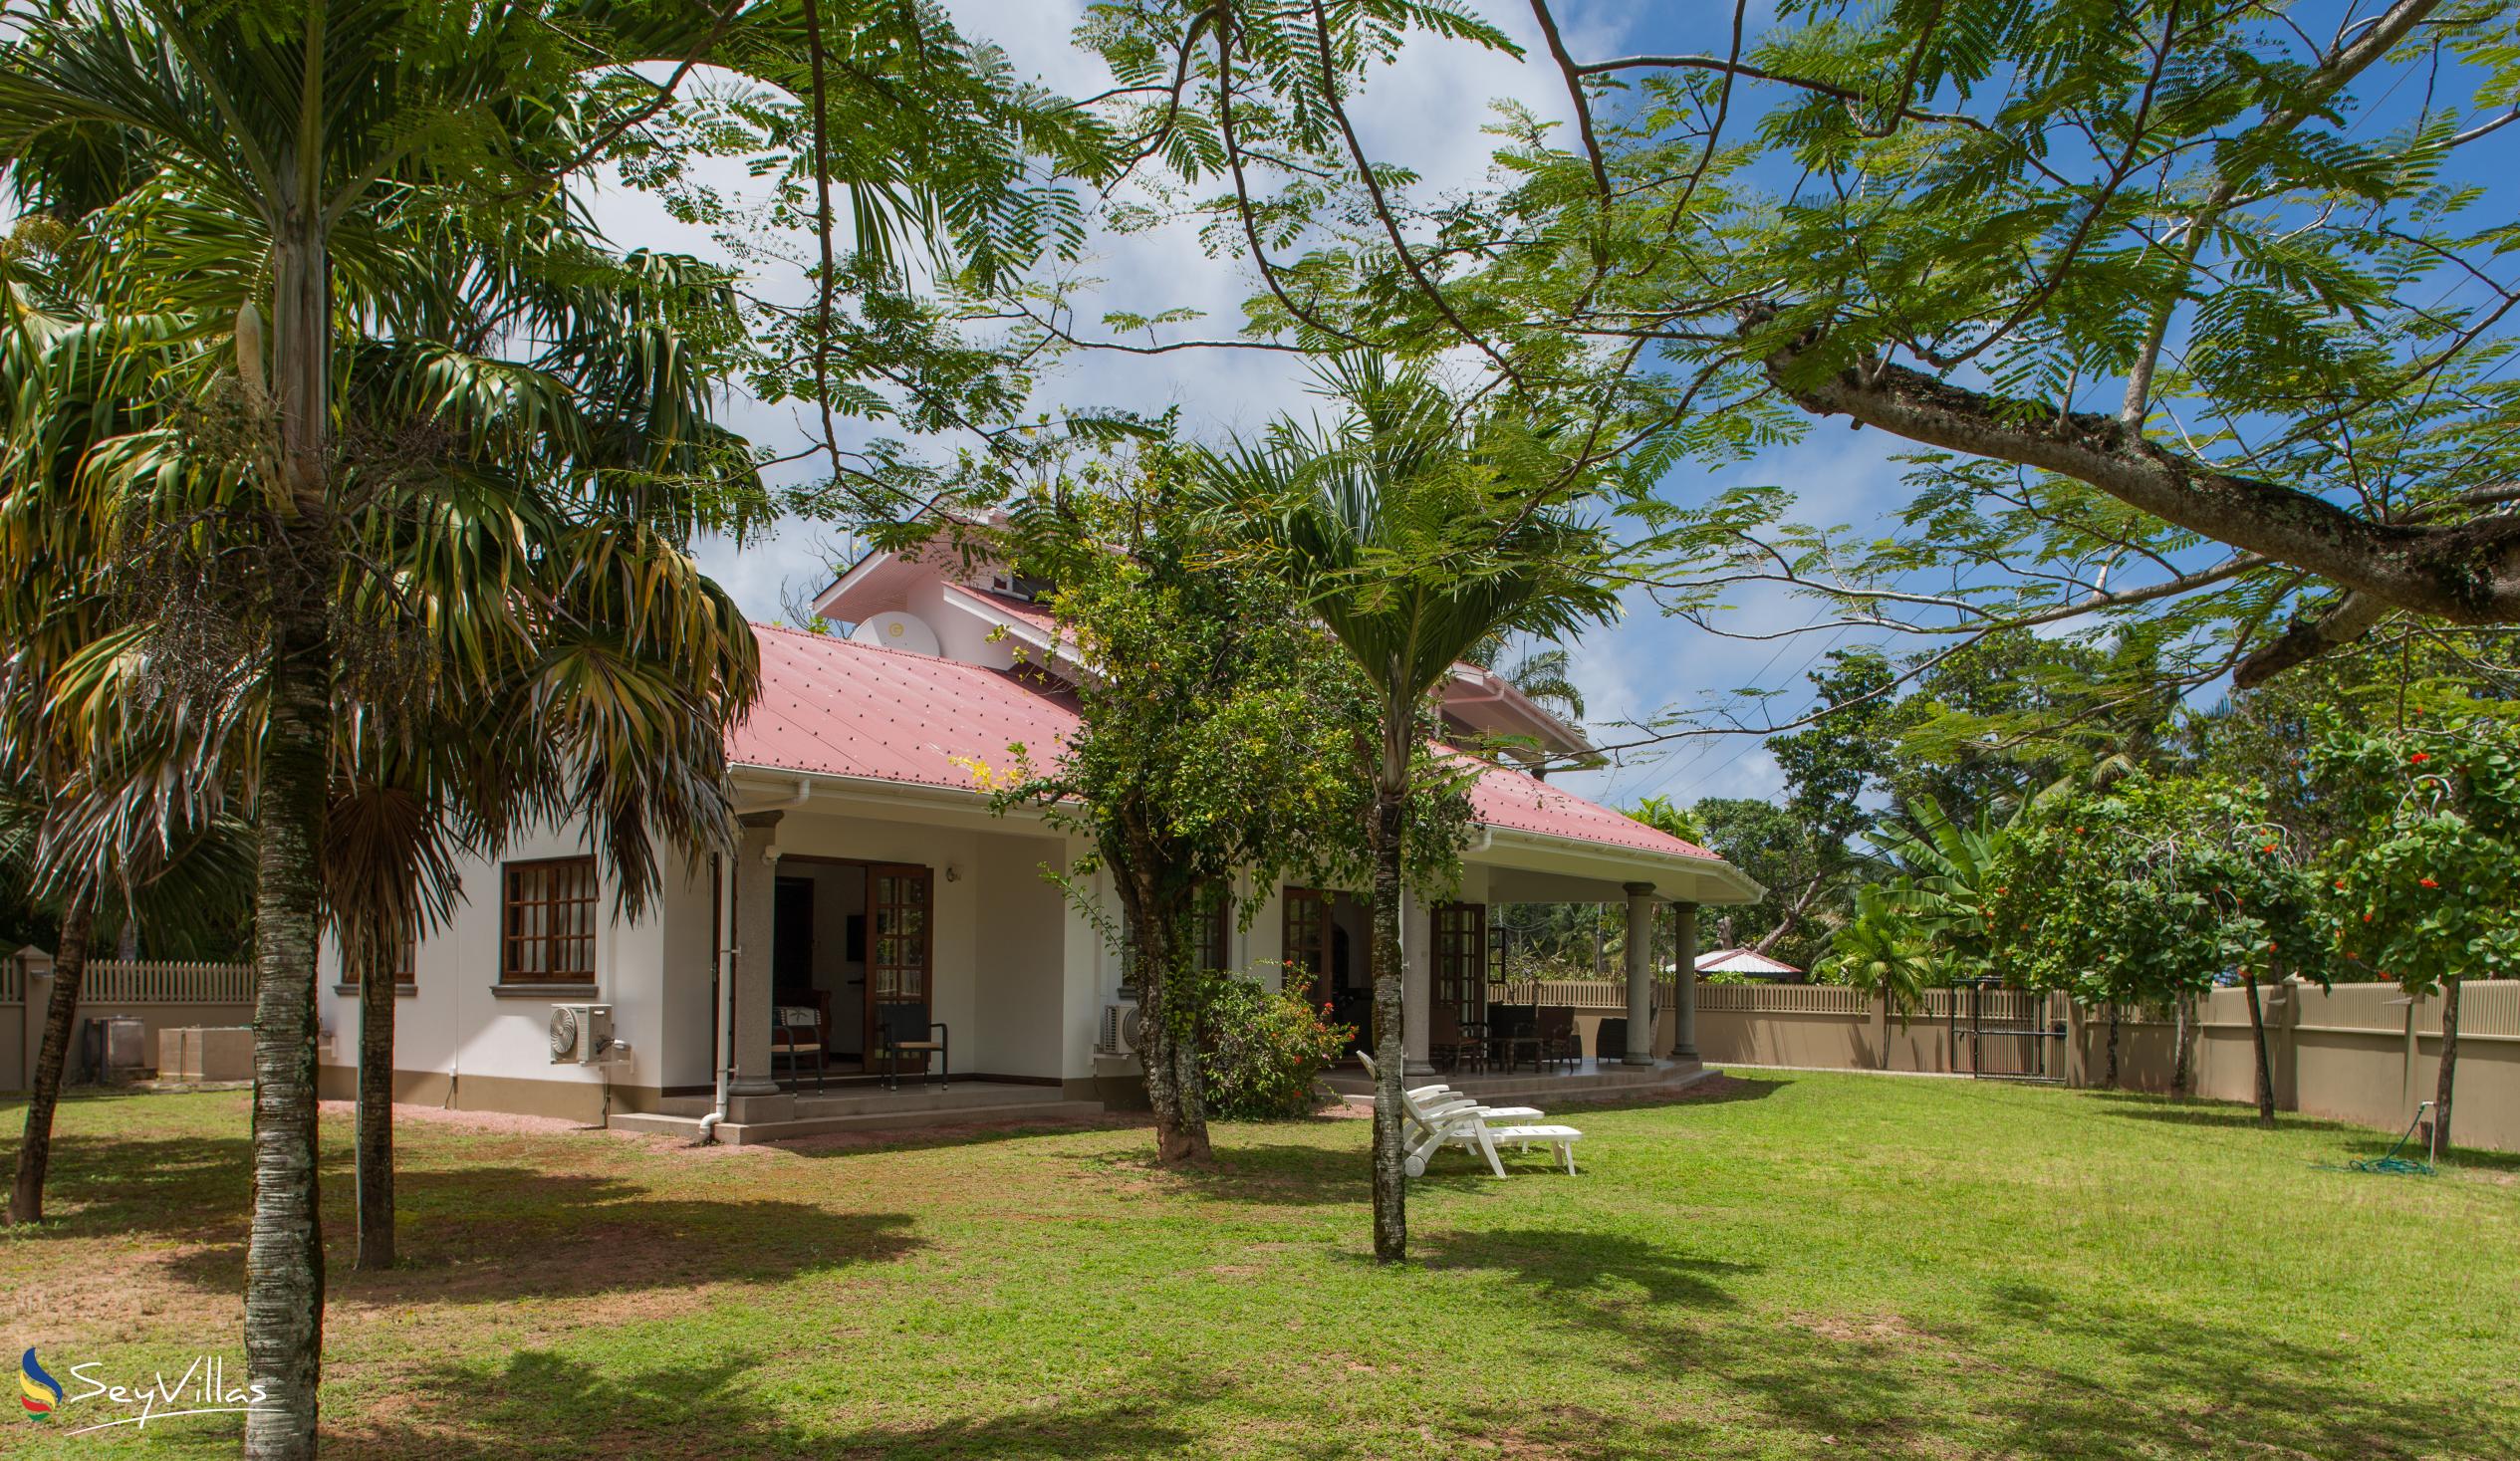 Foto 1: Villa Saint Sauveur - Aussenbereich - Praslin (Seychellen)